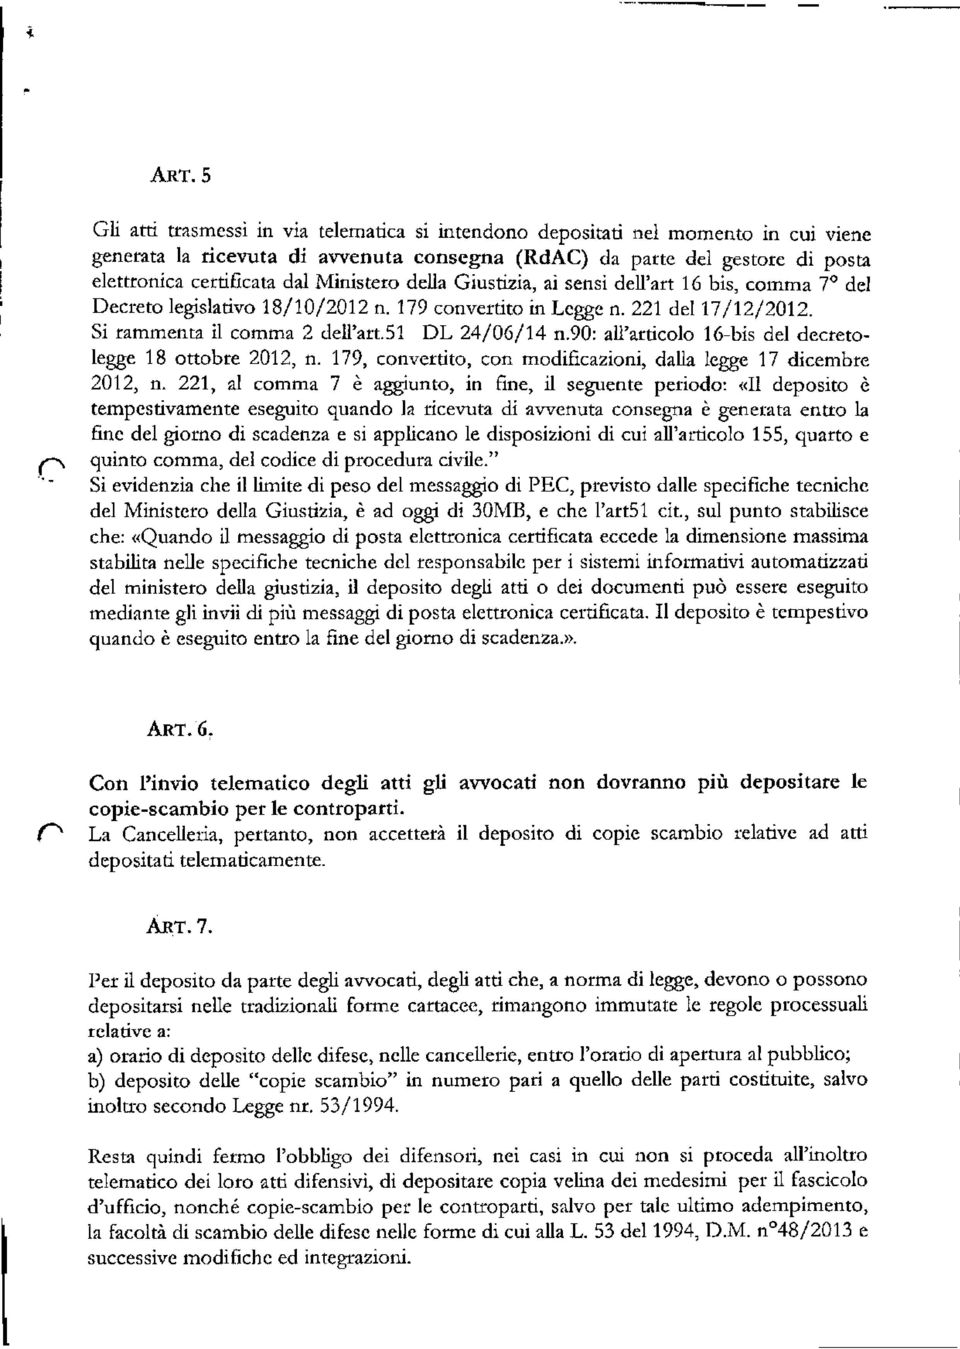 90: all'articolo 16-bis del decretolegge 18 ottobre 2012, n. 179, convcrtito, con modificazioni, dalla legge 17 dicembre 2012, n.